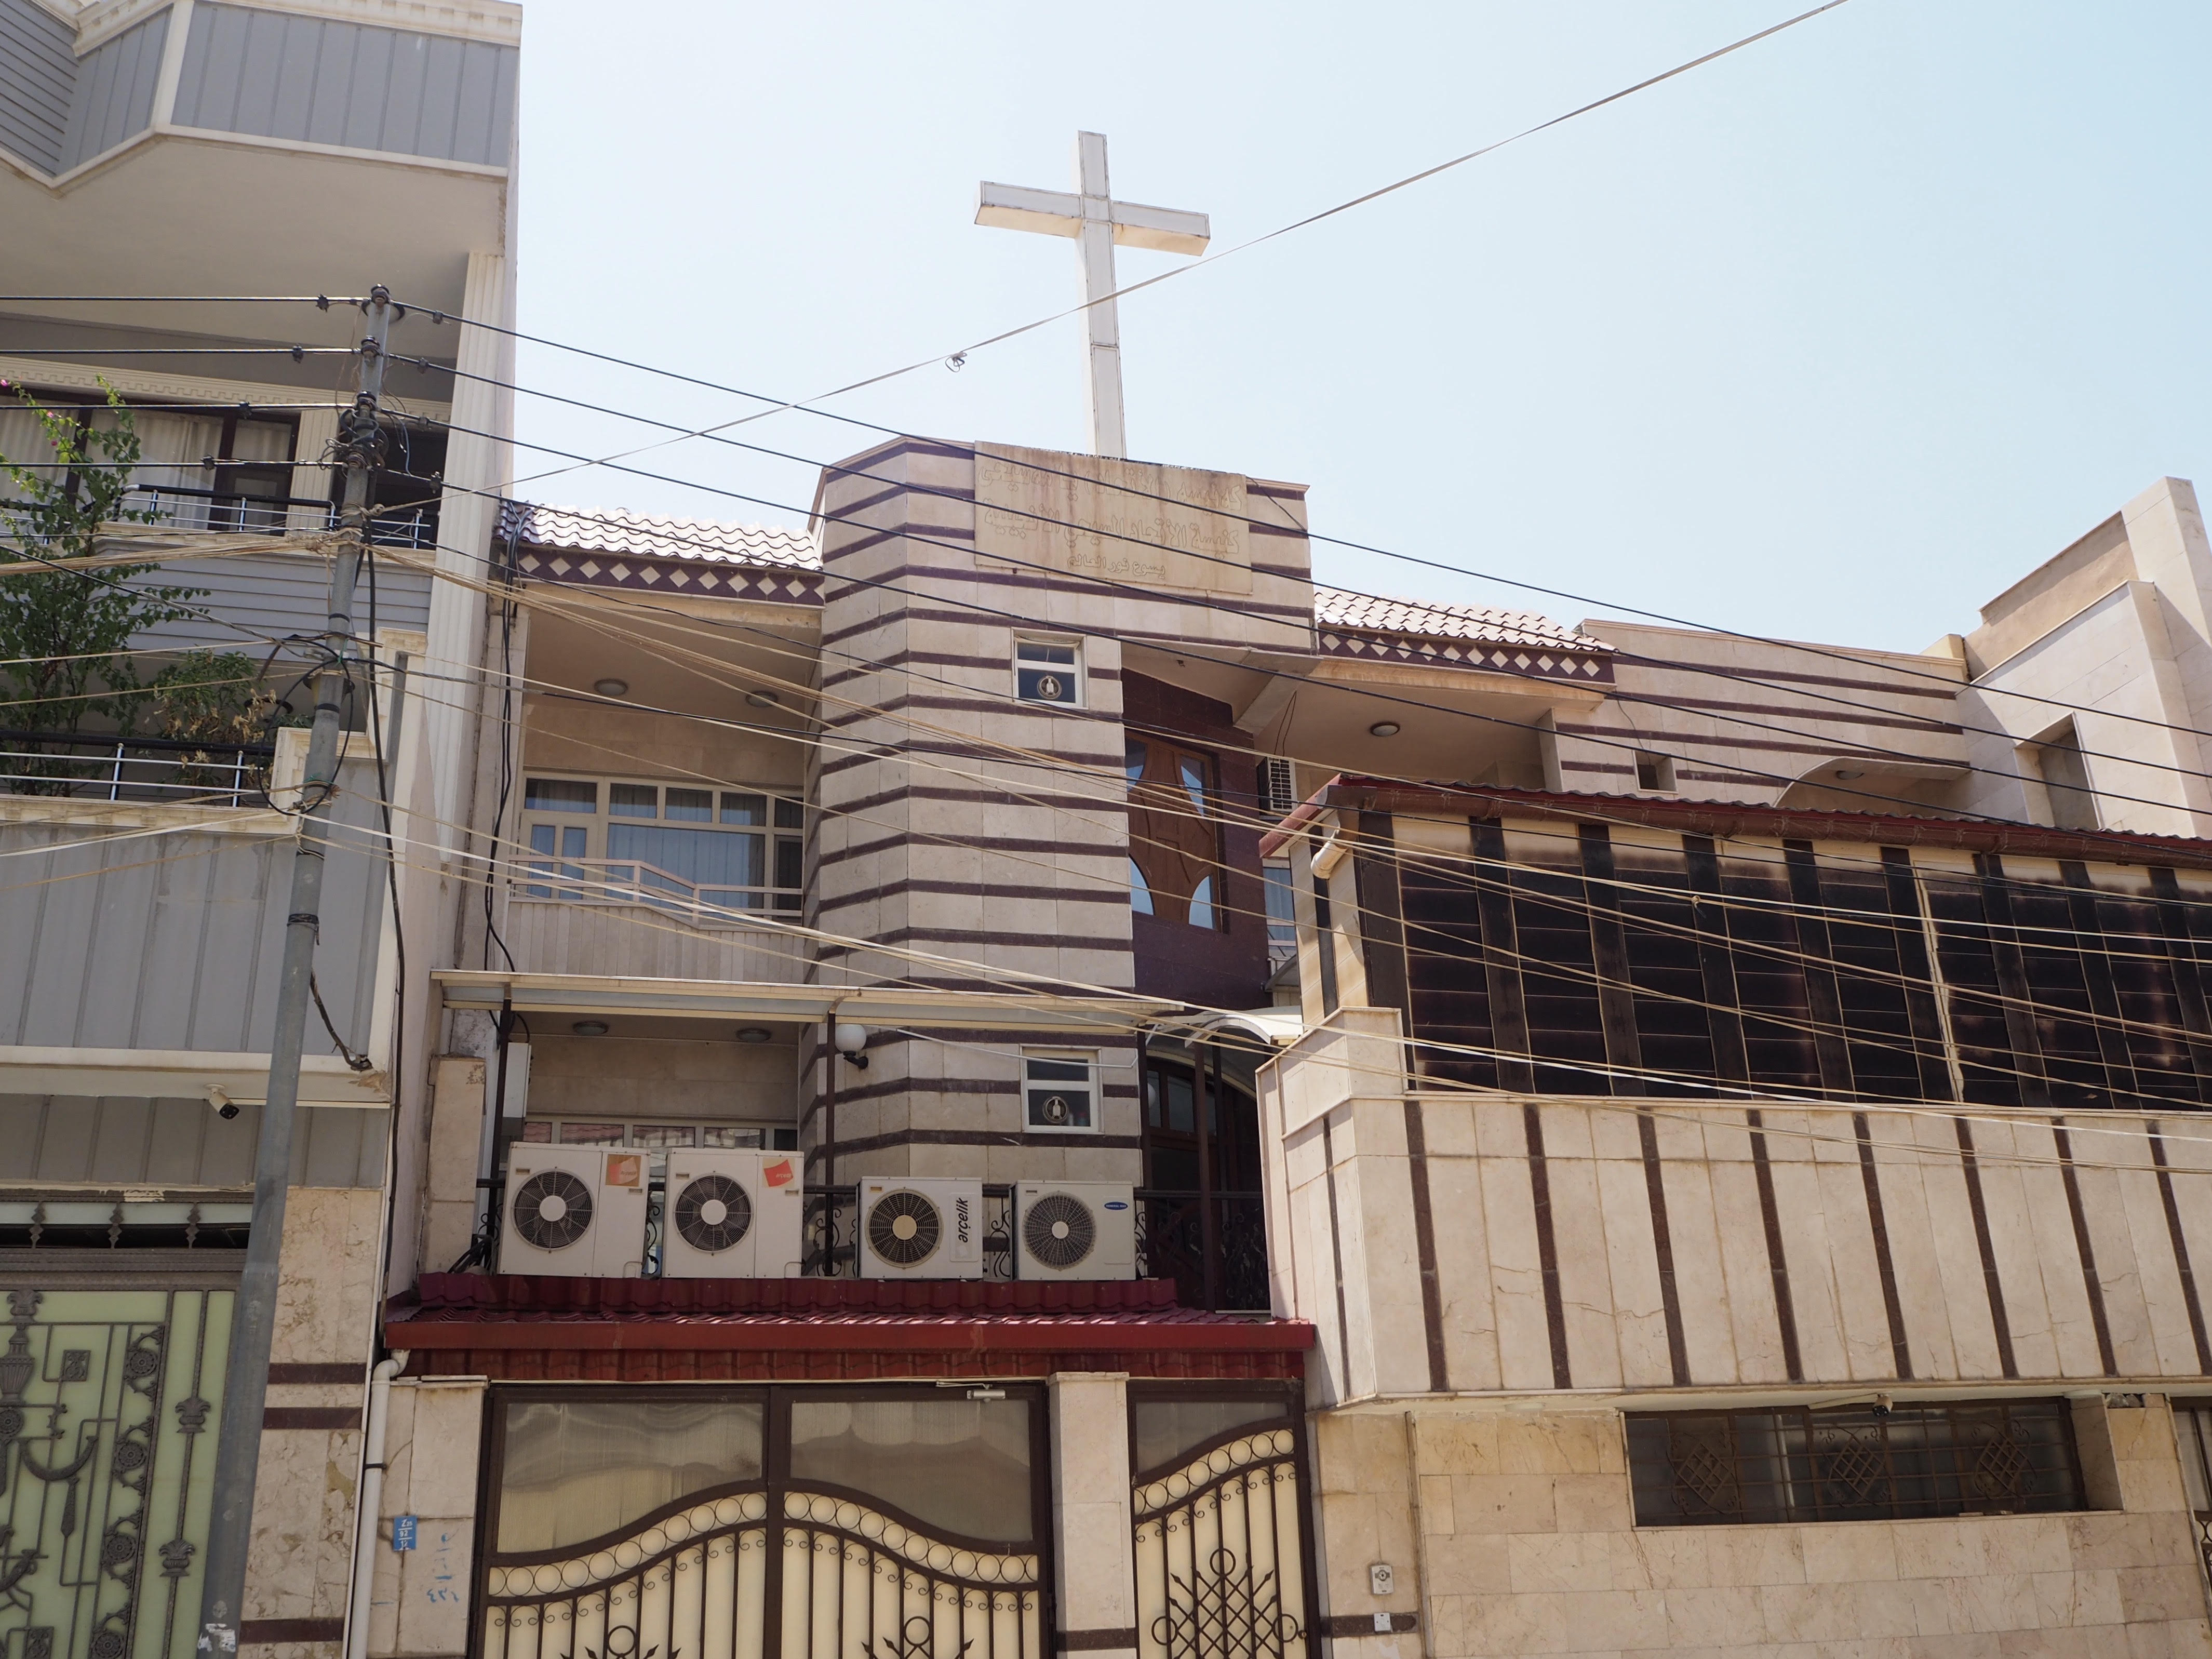 Une église de Duhok où seraient amenés les yézidis entre des cours d’anglais (MEE/Tom Westcott)